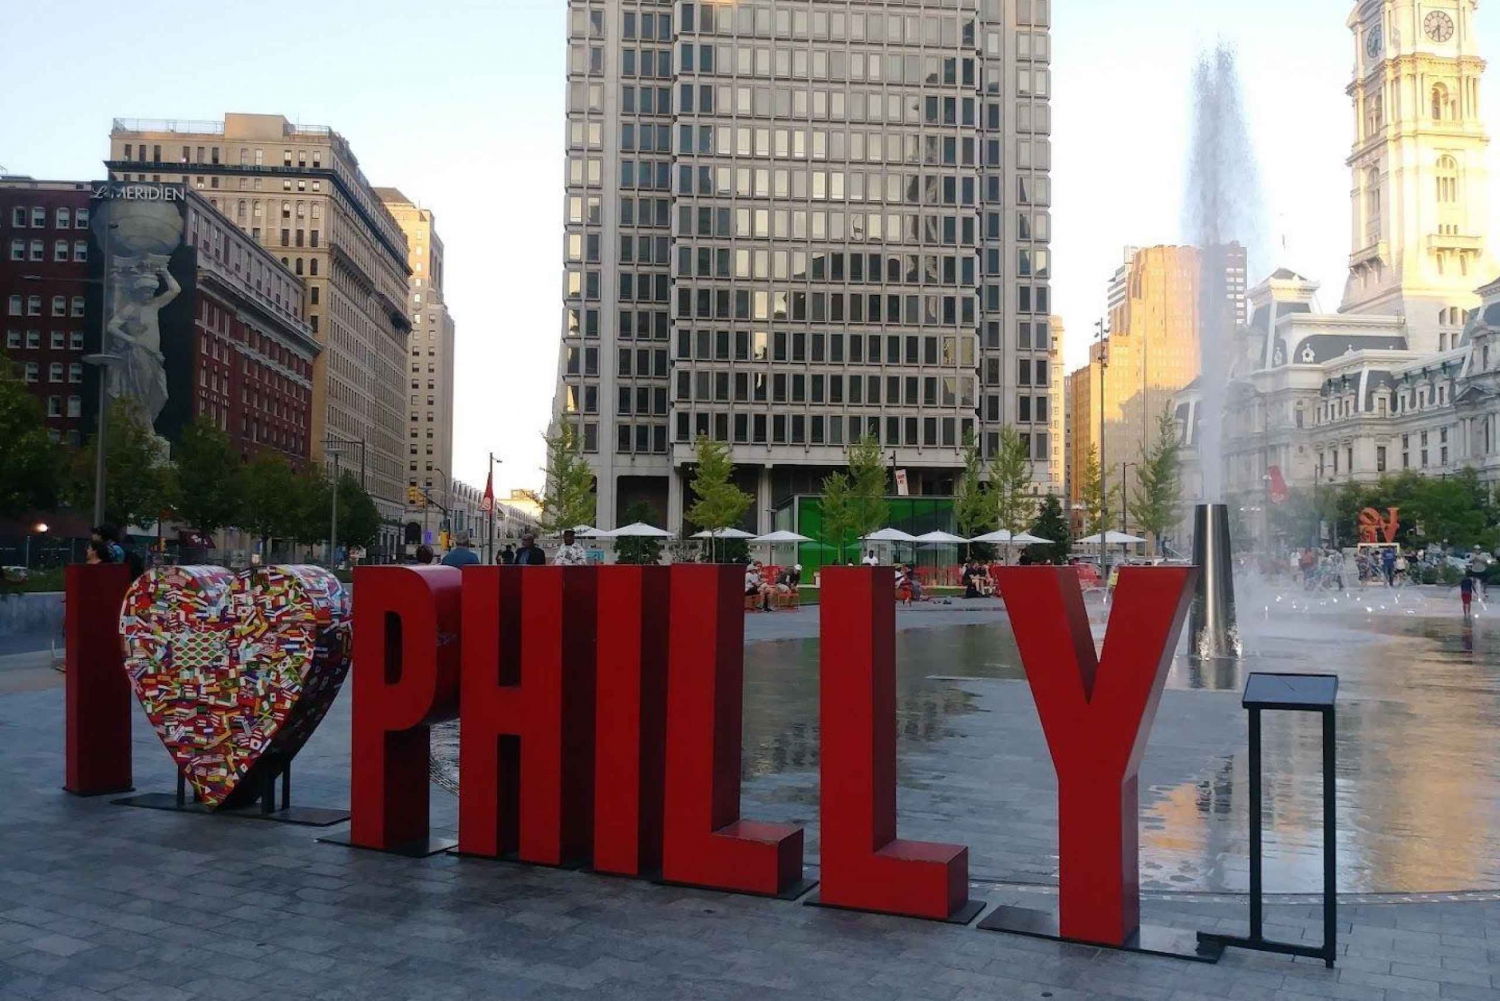 Philly's arkitektoniska underverk: En självstyrd ljudguide